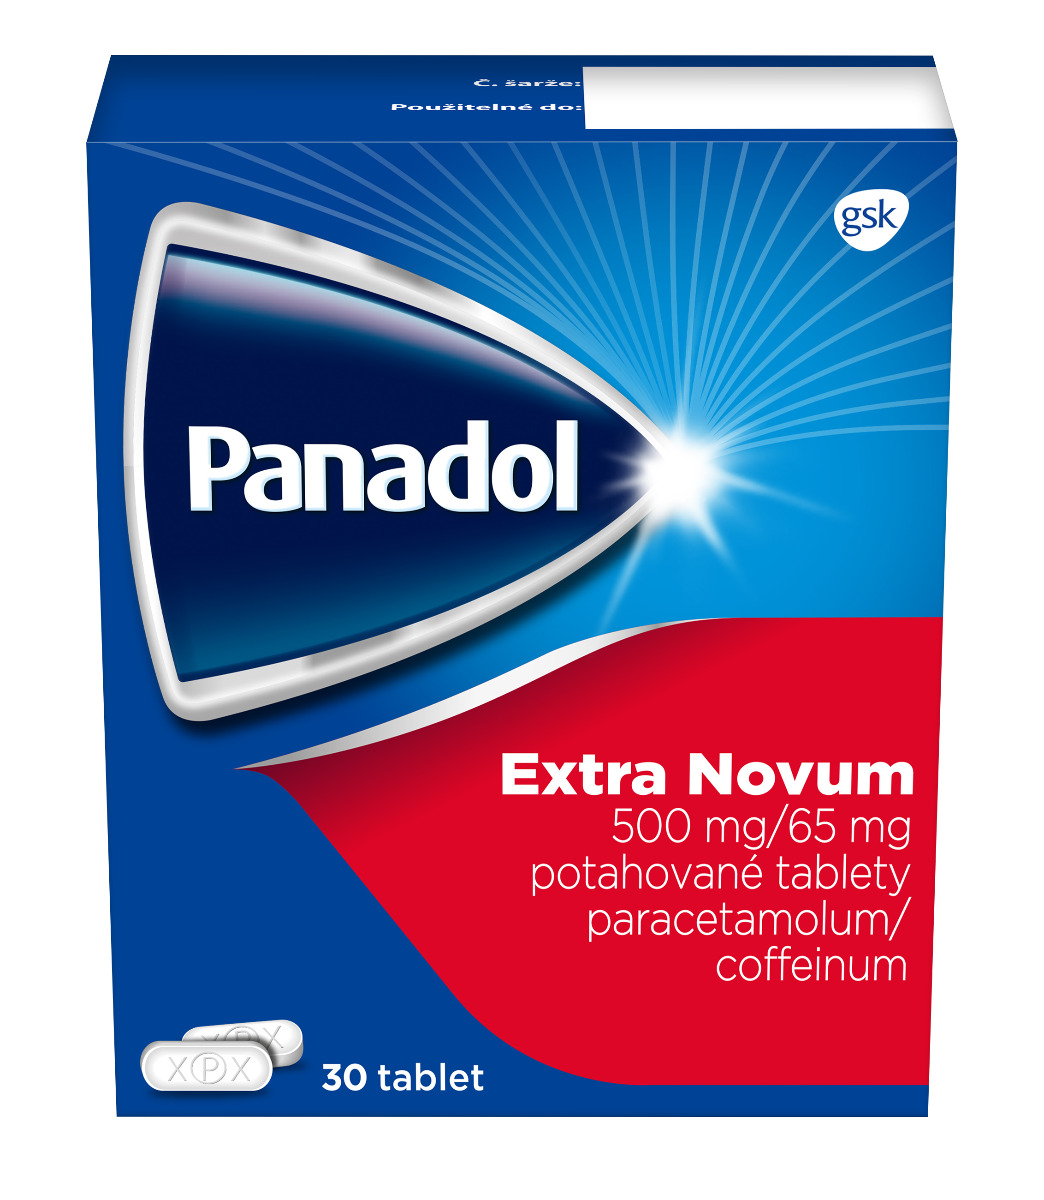 Panadol Extra Novum 30 tablet Panadol